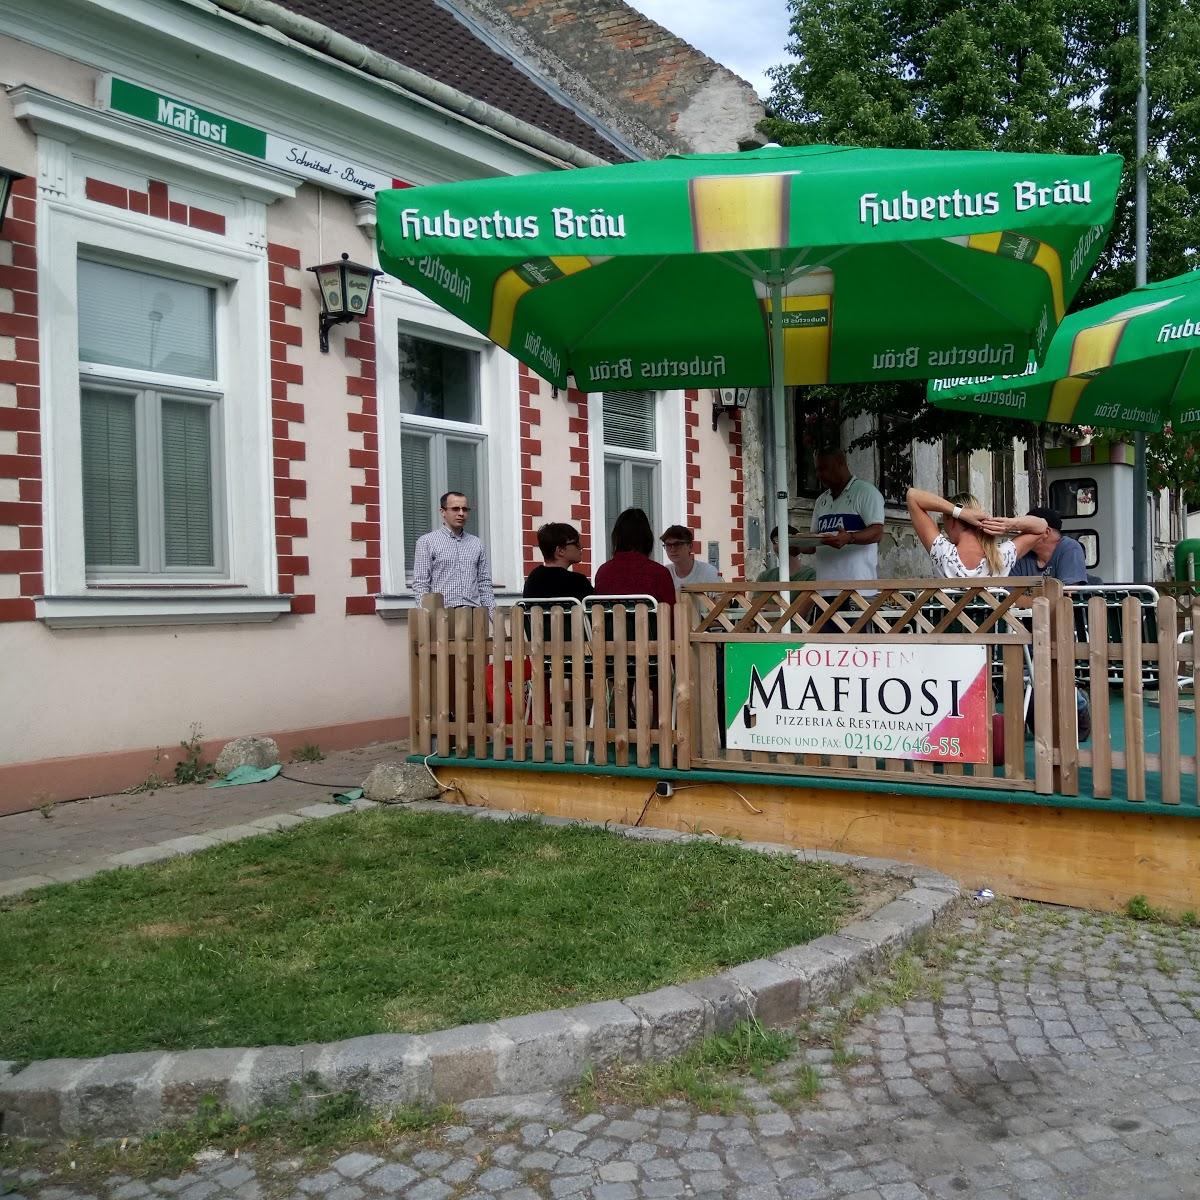 Restaurant "Pizzeria Restaurant Mafiosi" in Wilfleinsdorf